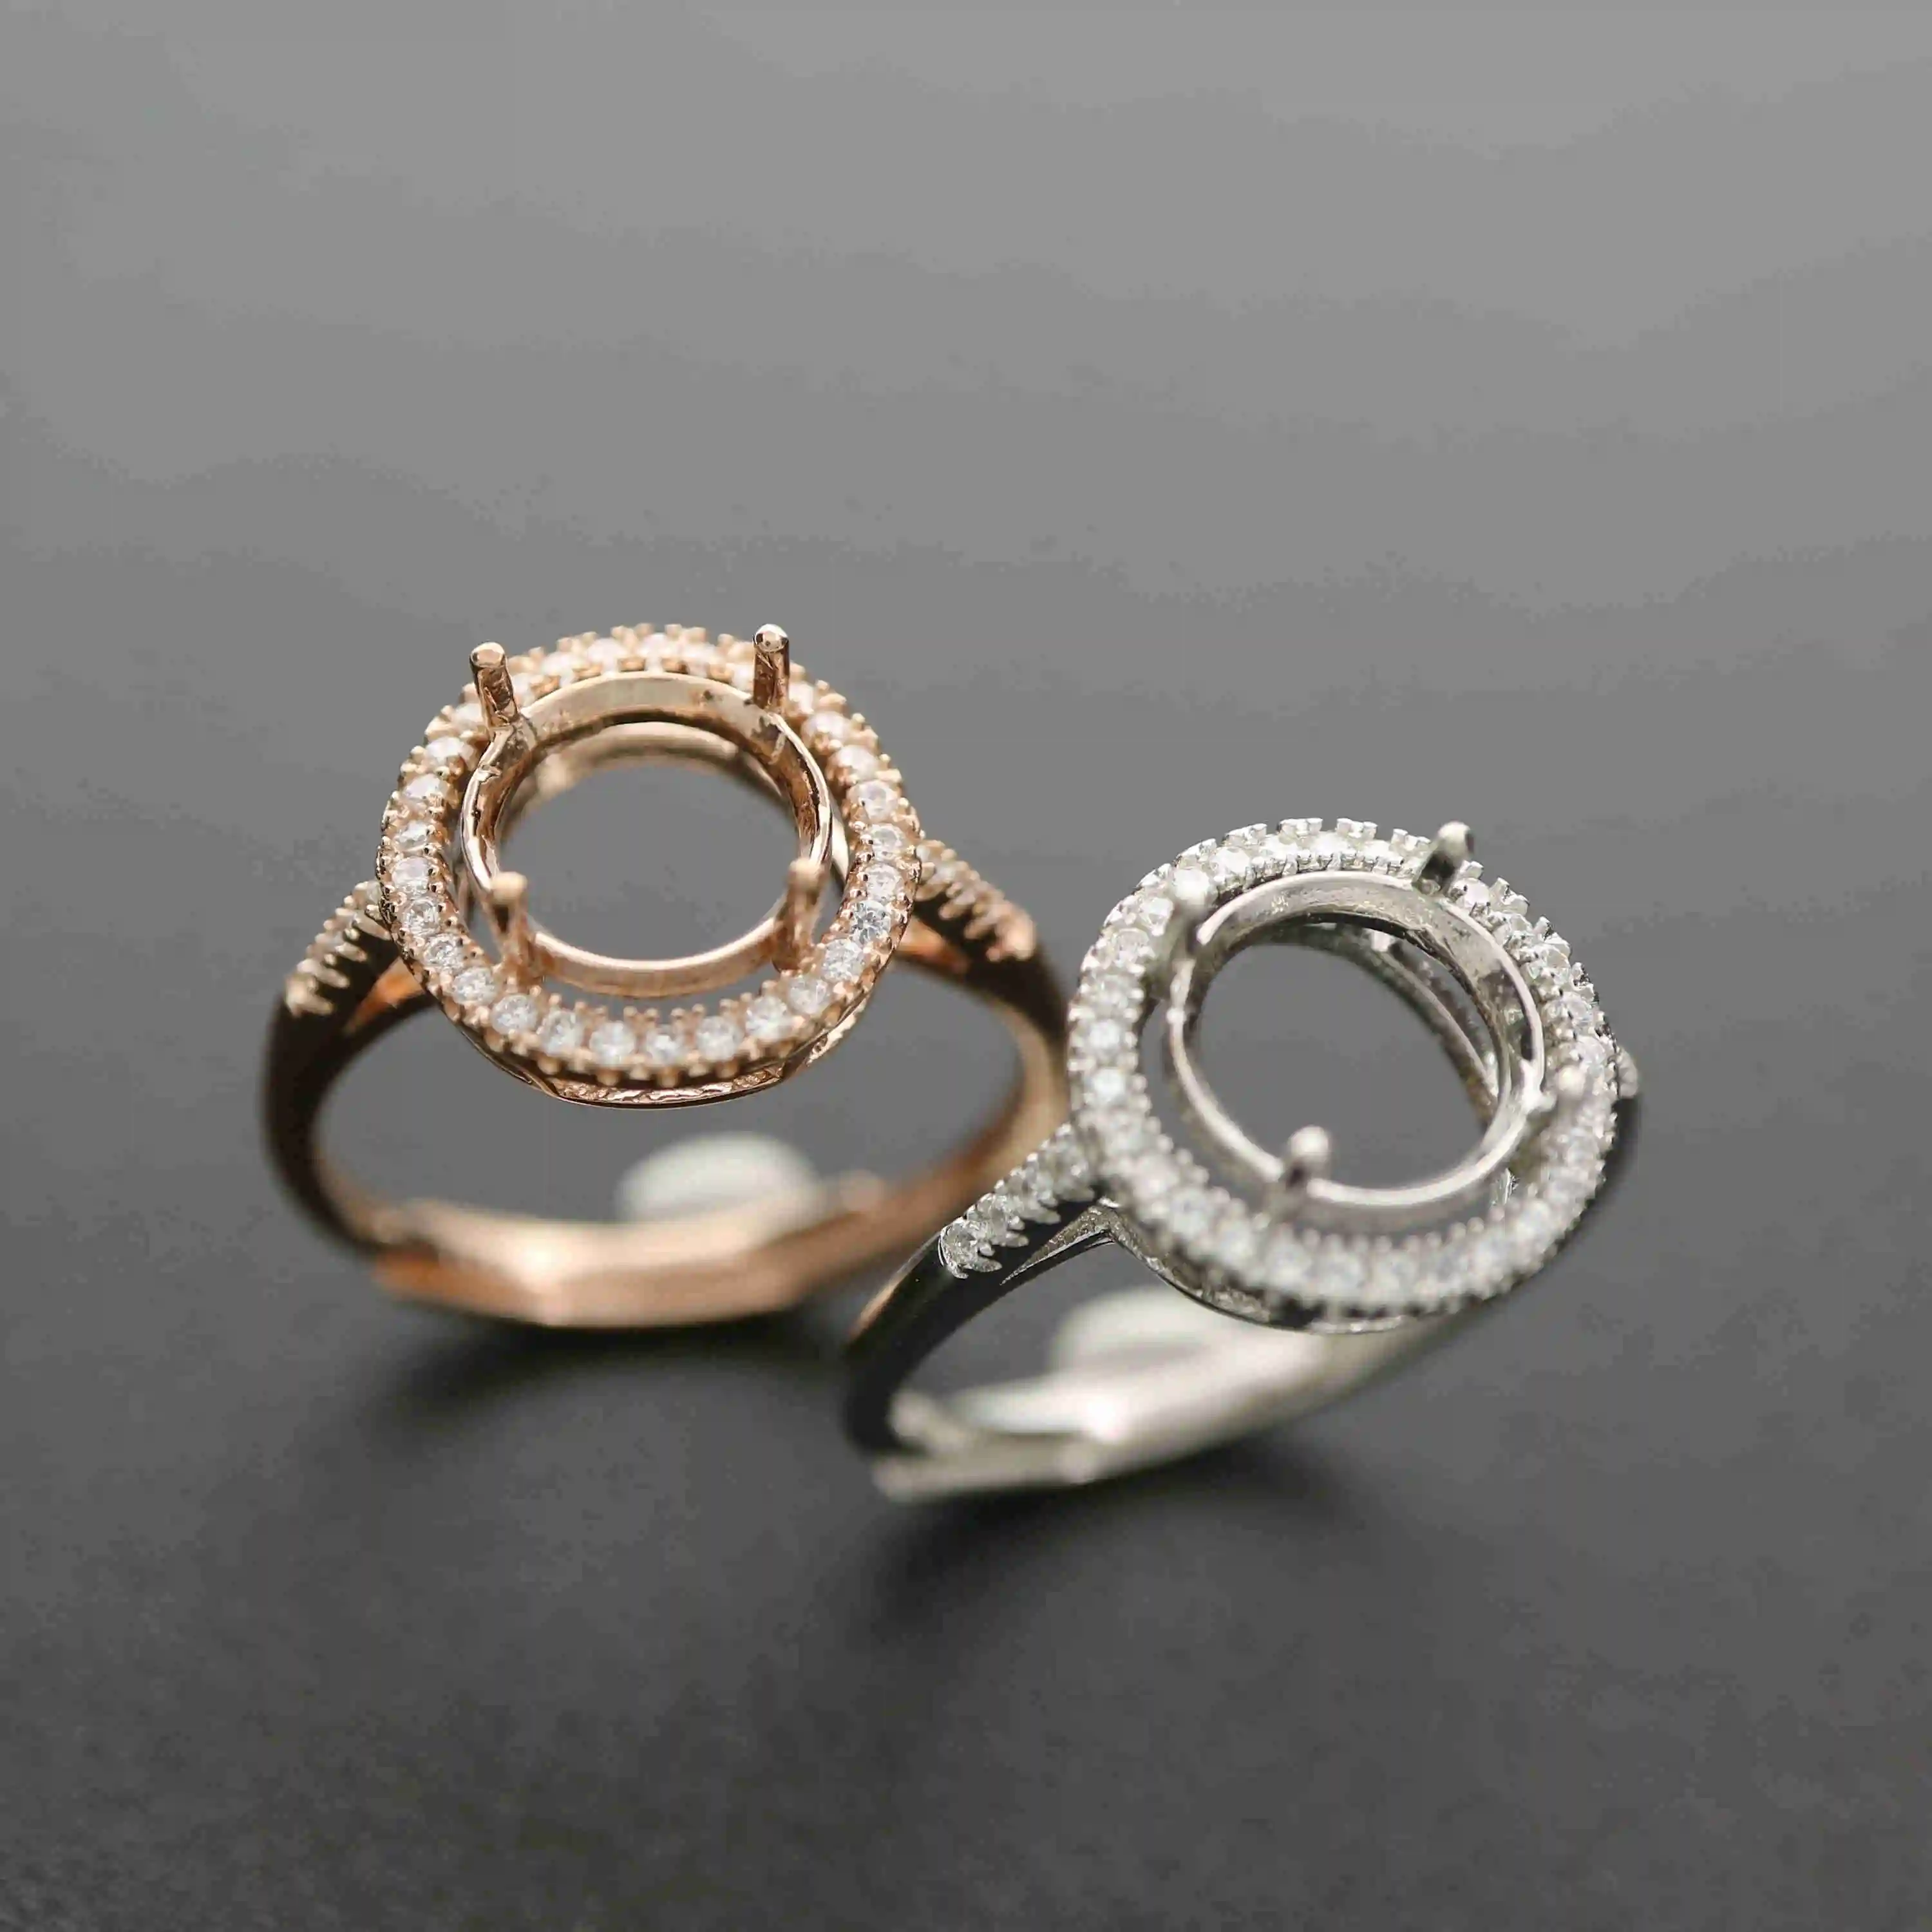 6-10MM ronda de oro rosa de plata Joyas CZ piedra puntas bisel sólida plata de ley 925 anillo ajustable configuración 1210031 0